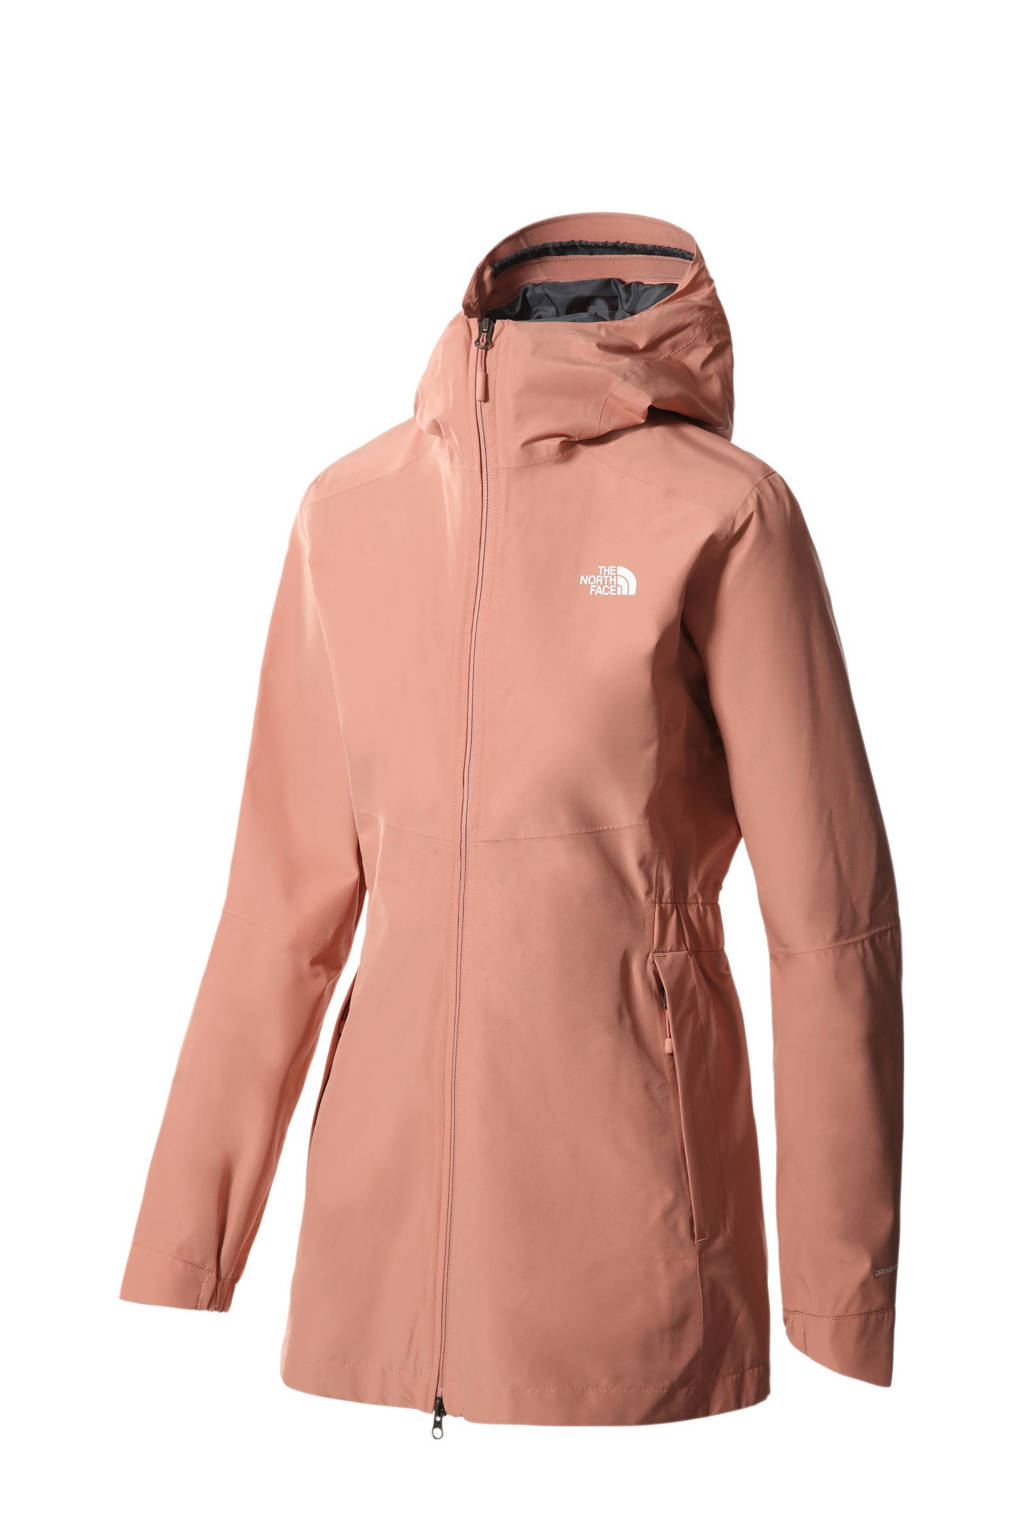 Roze dames The North Face outdoor jas Hikesteller van polyester met logo dessin, lange mouwen, capuchon en 2-way rits